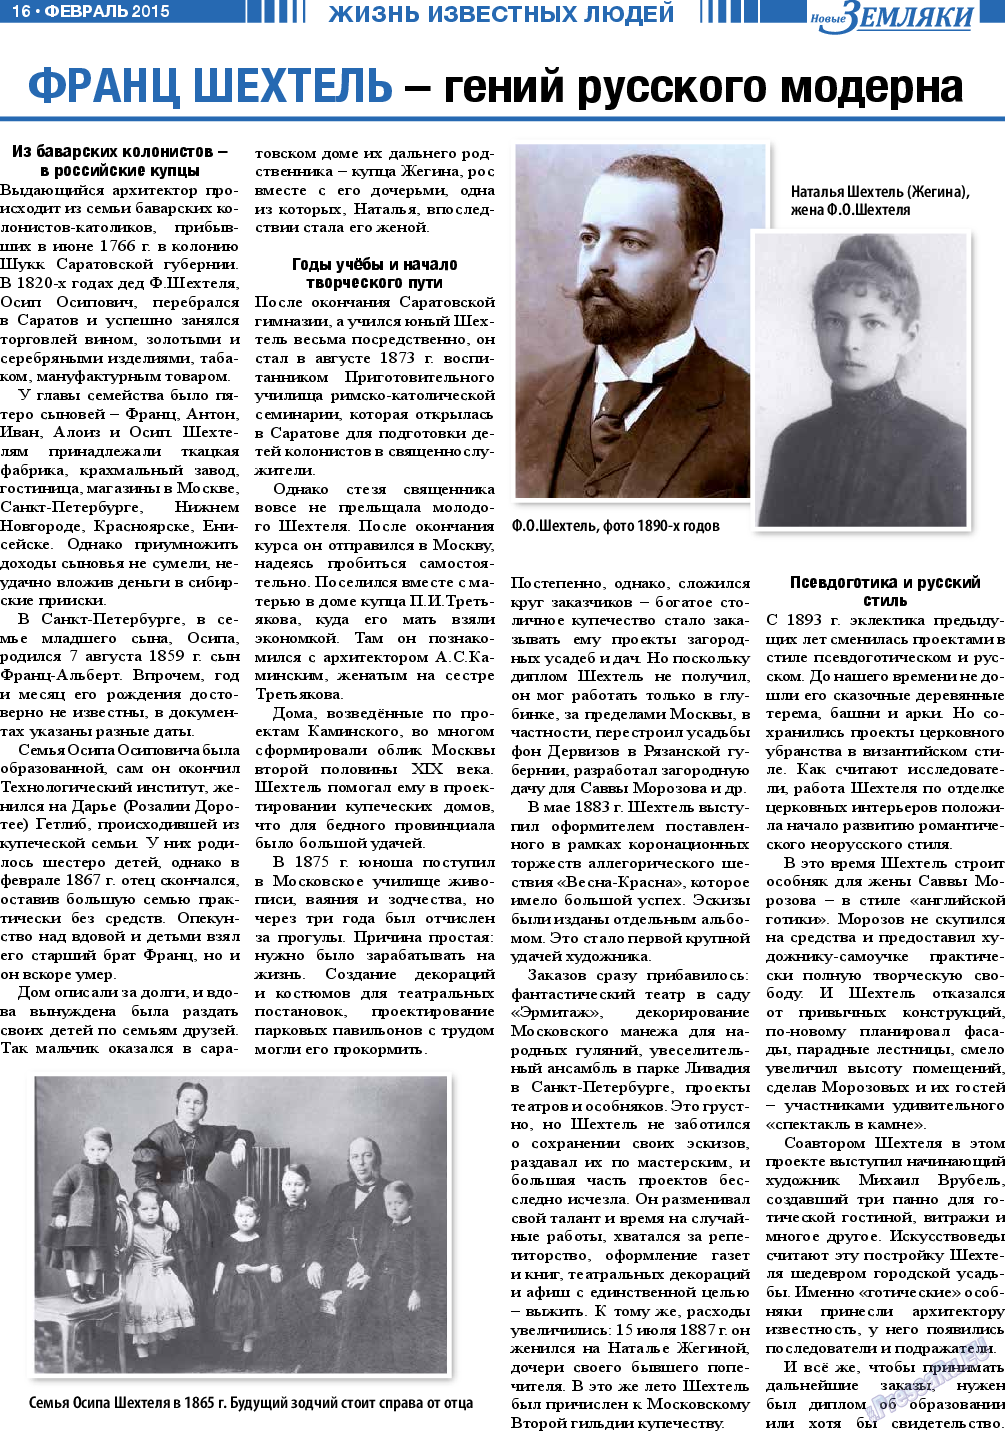 Новые Земляки, газета. 2015 №2 стр.16